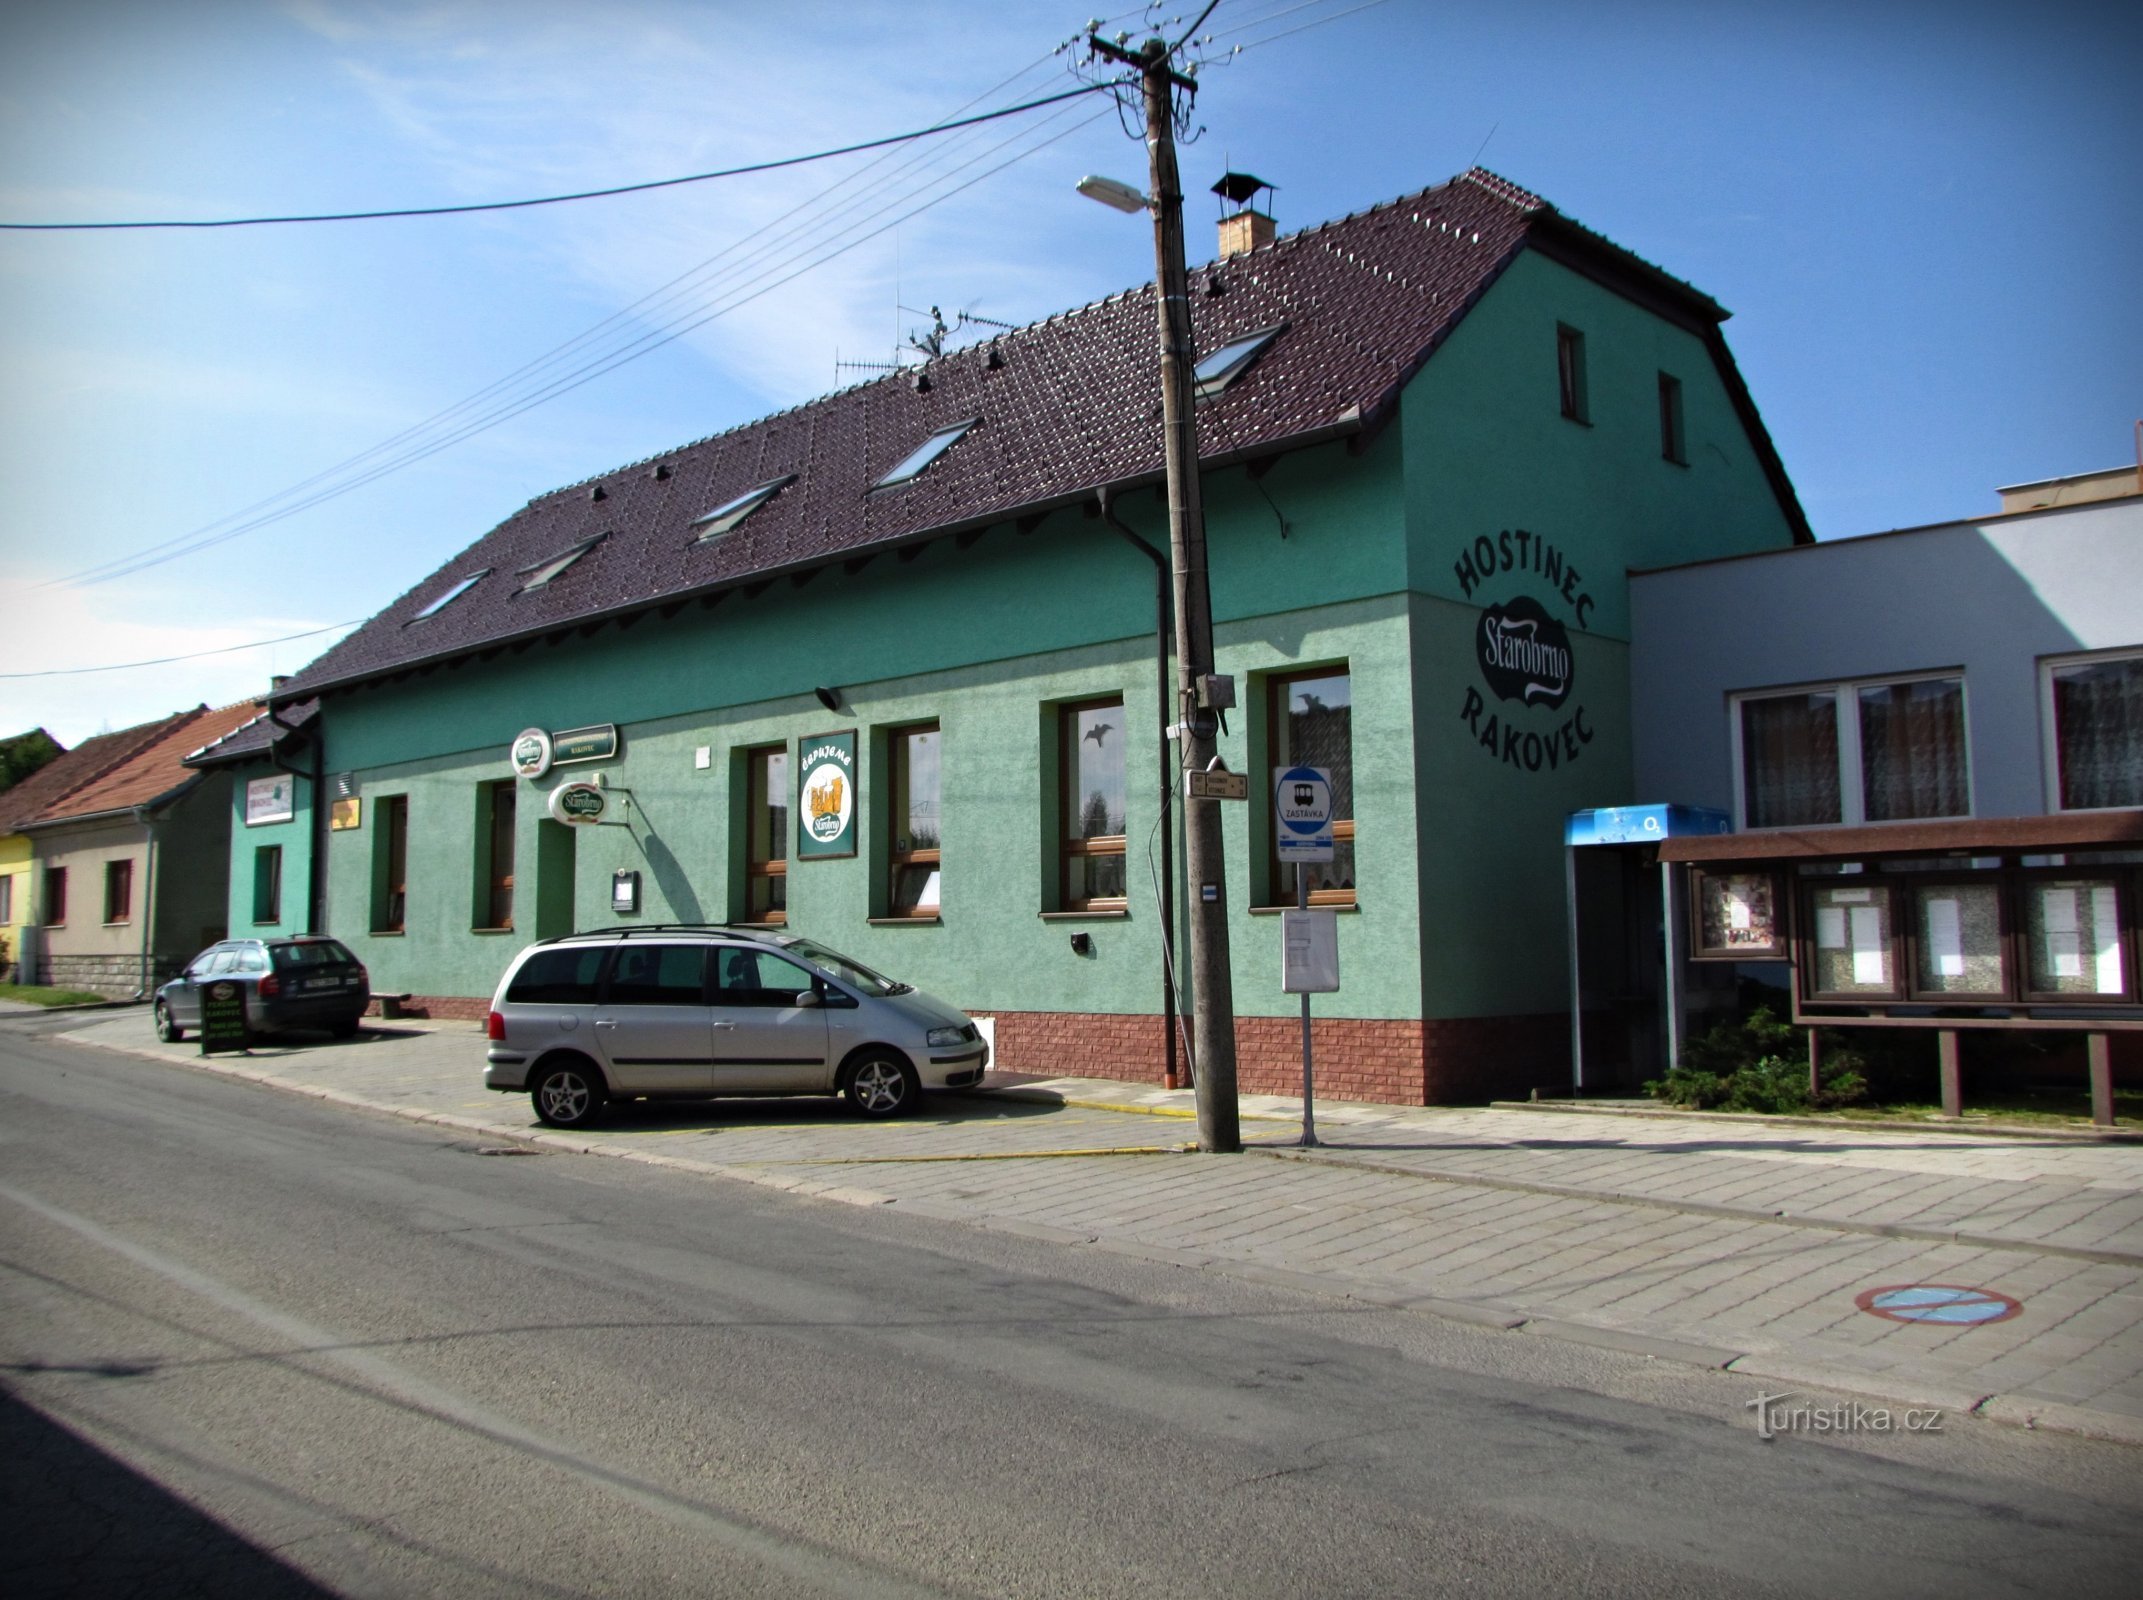 Bukovinka - pensionat med restaurang